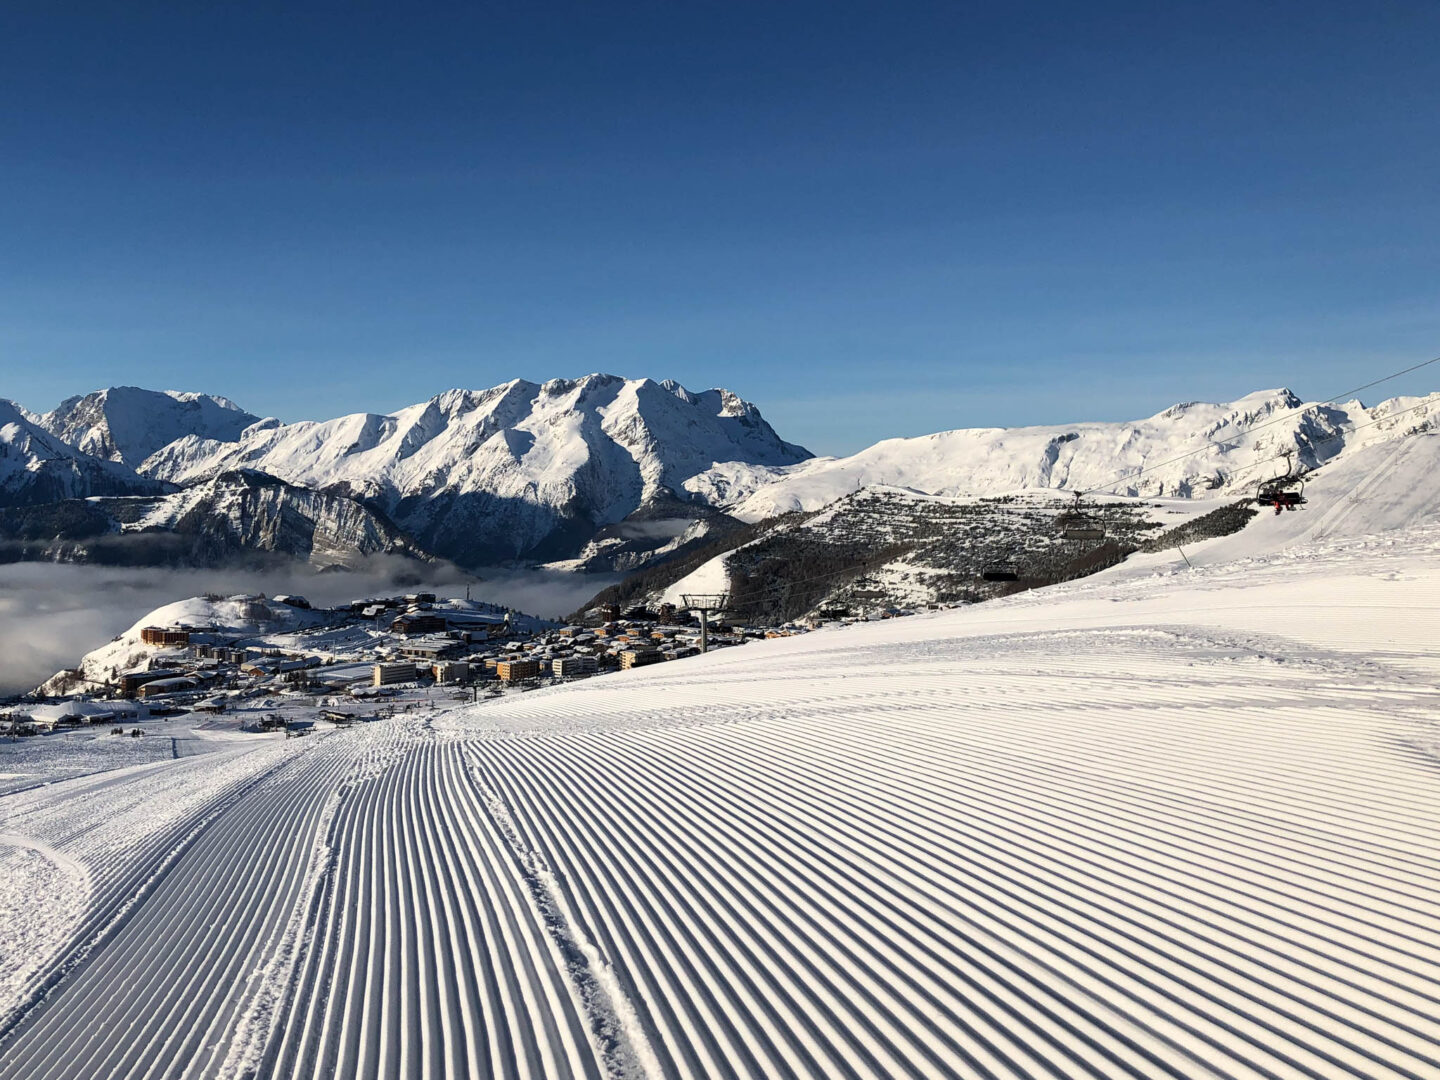 Plan de la station - Alpe d'huez - Site Officiel - Winter